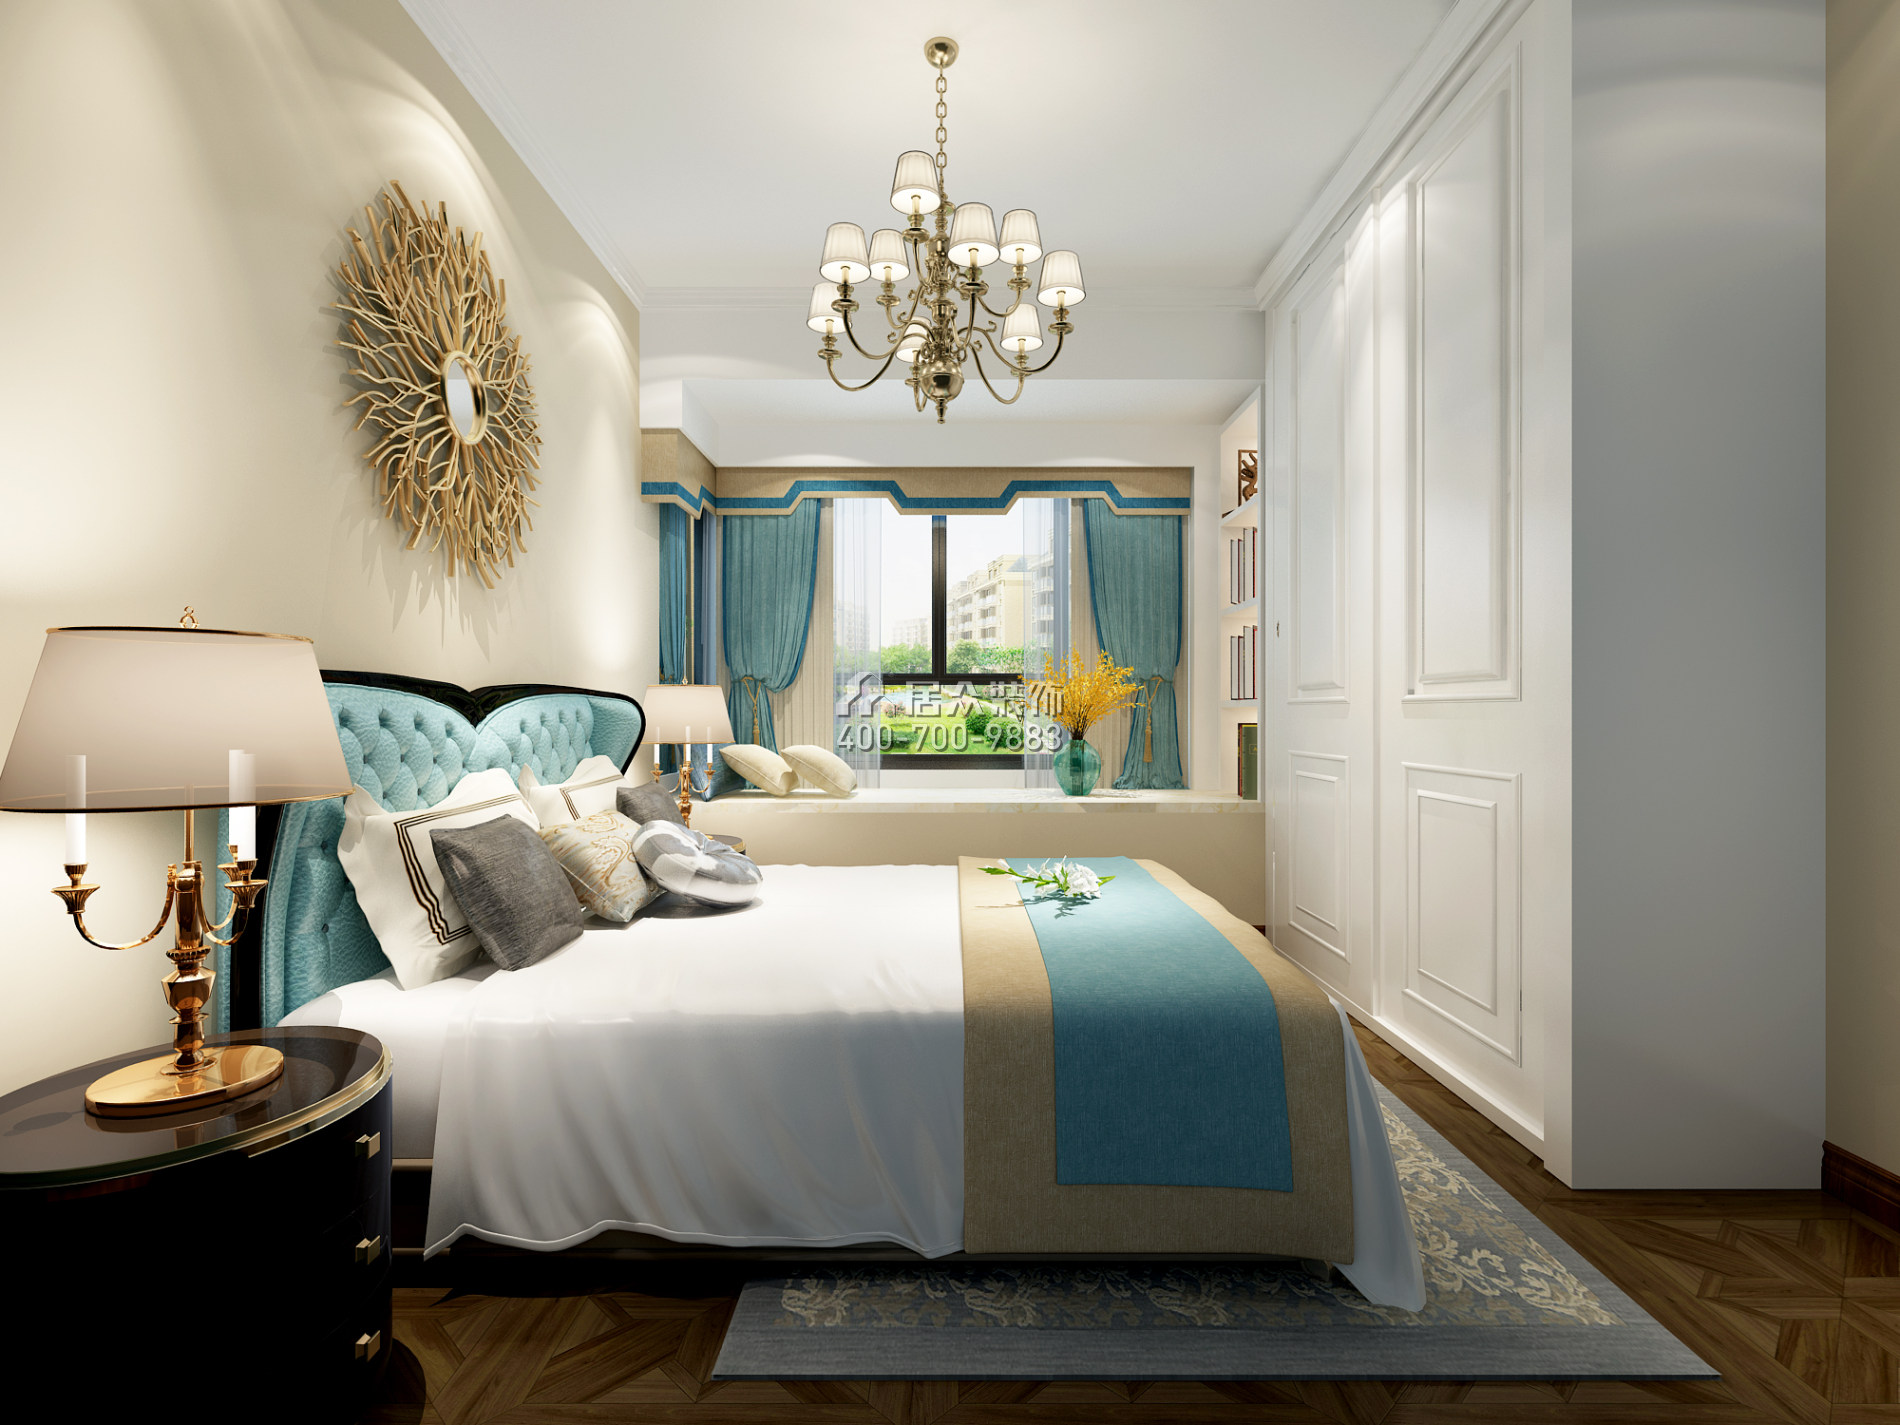 靖轩豪苑71平方米美式风格平层户型卧室装修效果图